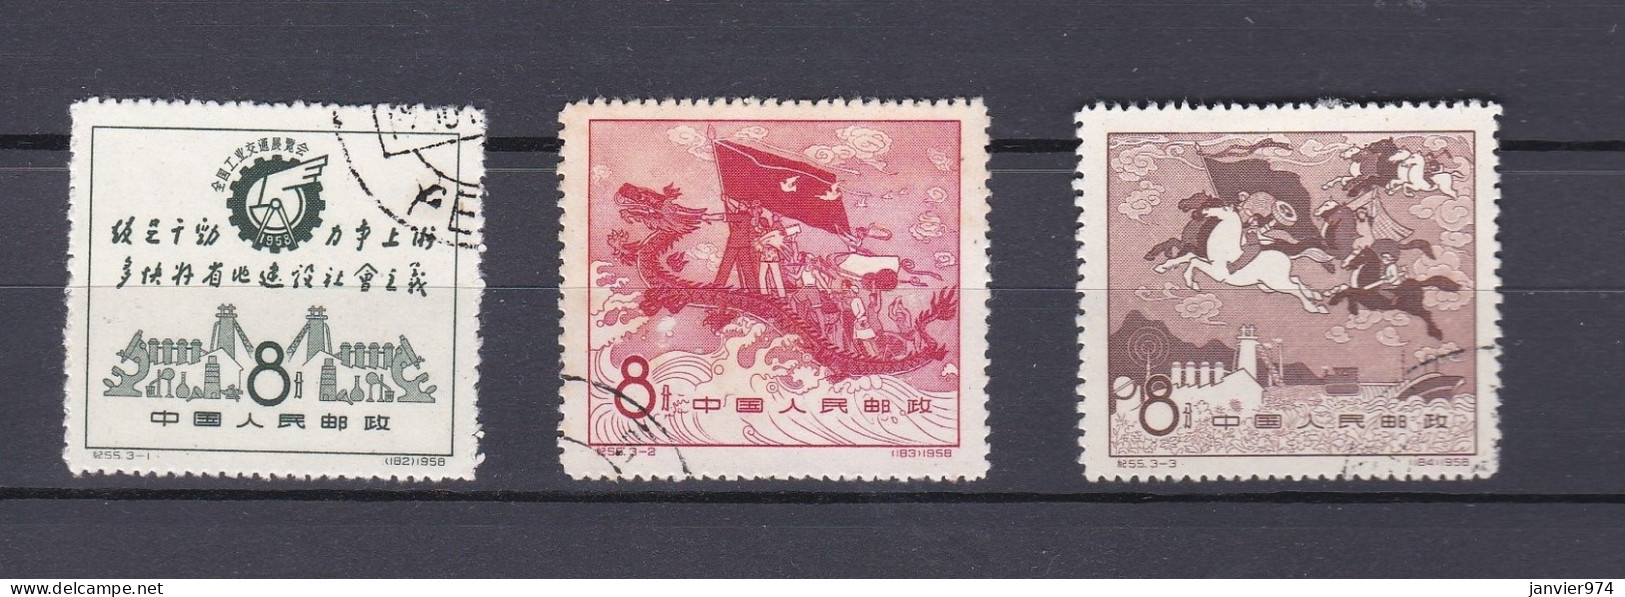 Chine 1958, La Serie Complete, Salon National De L'industrie Et Des Transports, 3 Timbres  - Gebraucht